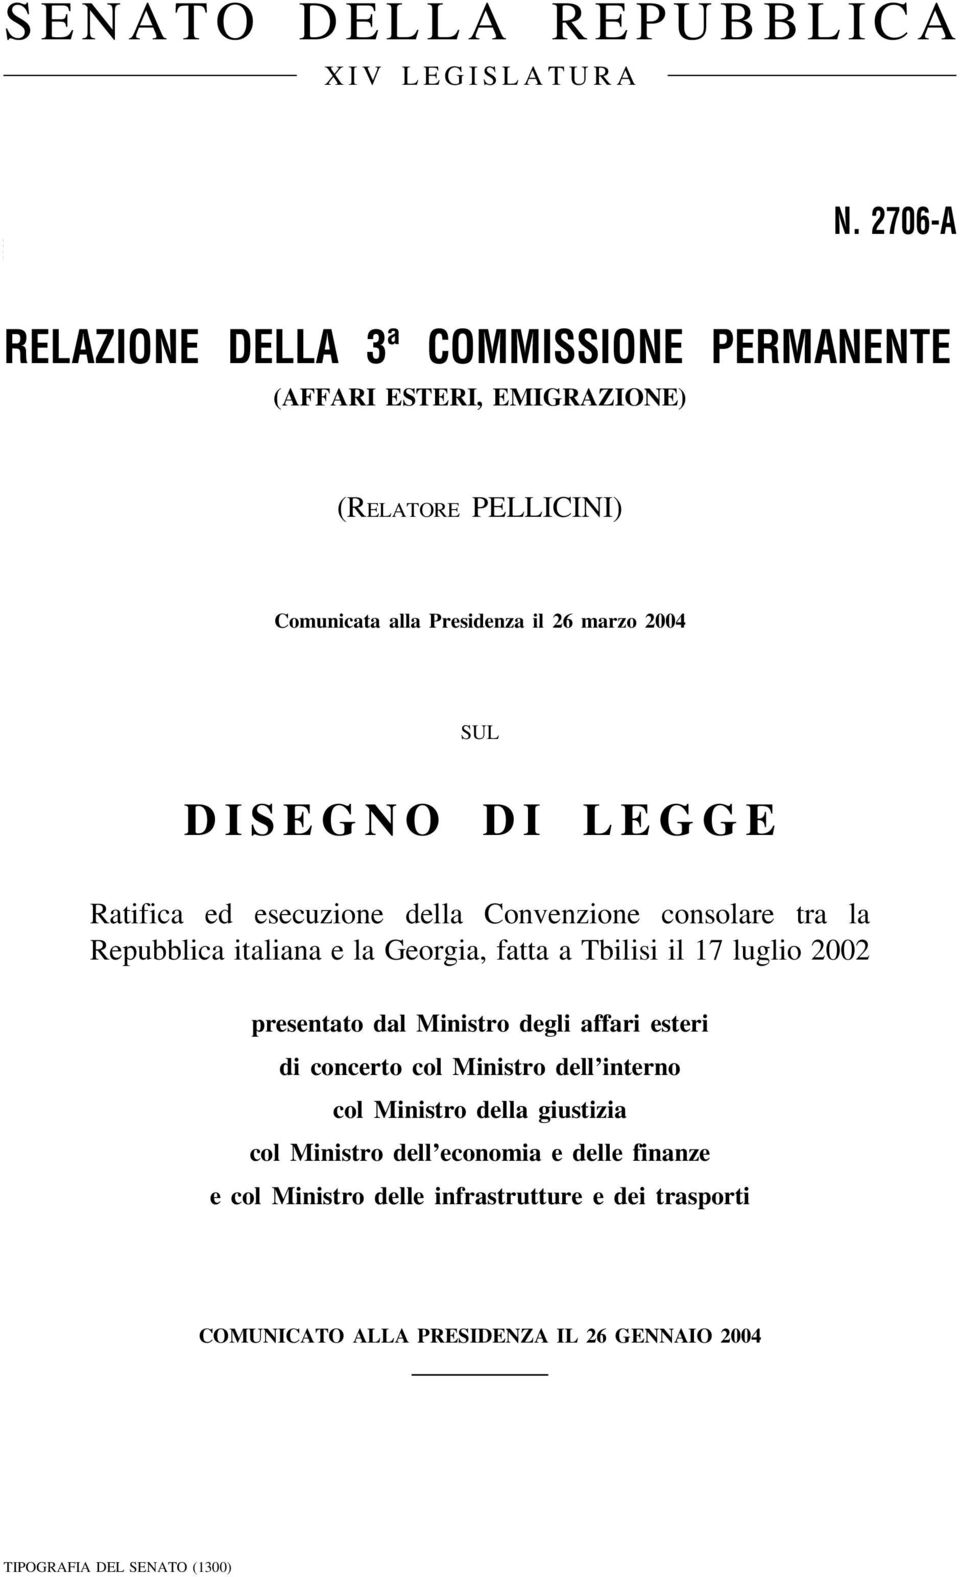 DISEGNO DI LEGGE Ratifica ed esecuzione della Convenzione consolare tra la Repubblica italiana e la Georgia, fatta a Tbilisi il 17 luglio 2002 presentato